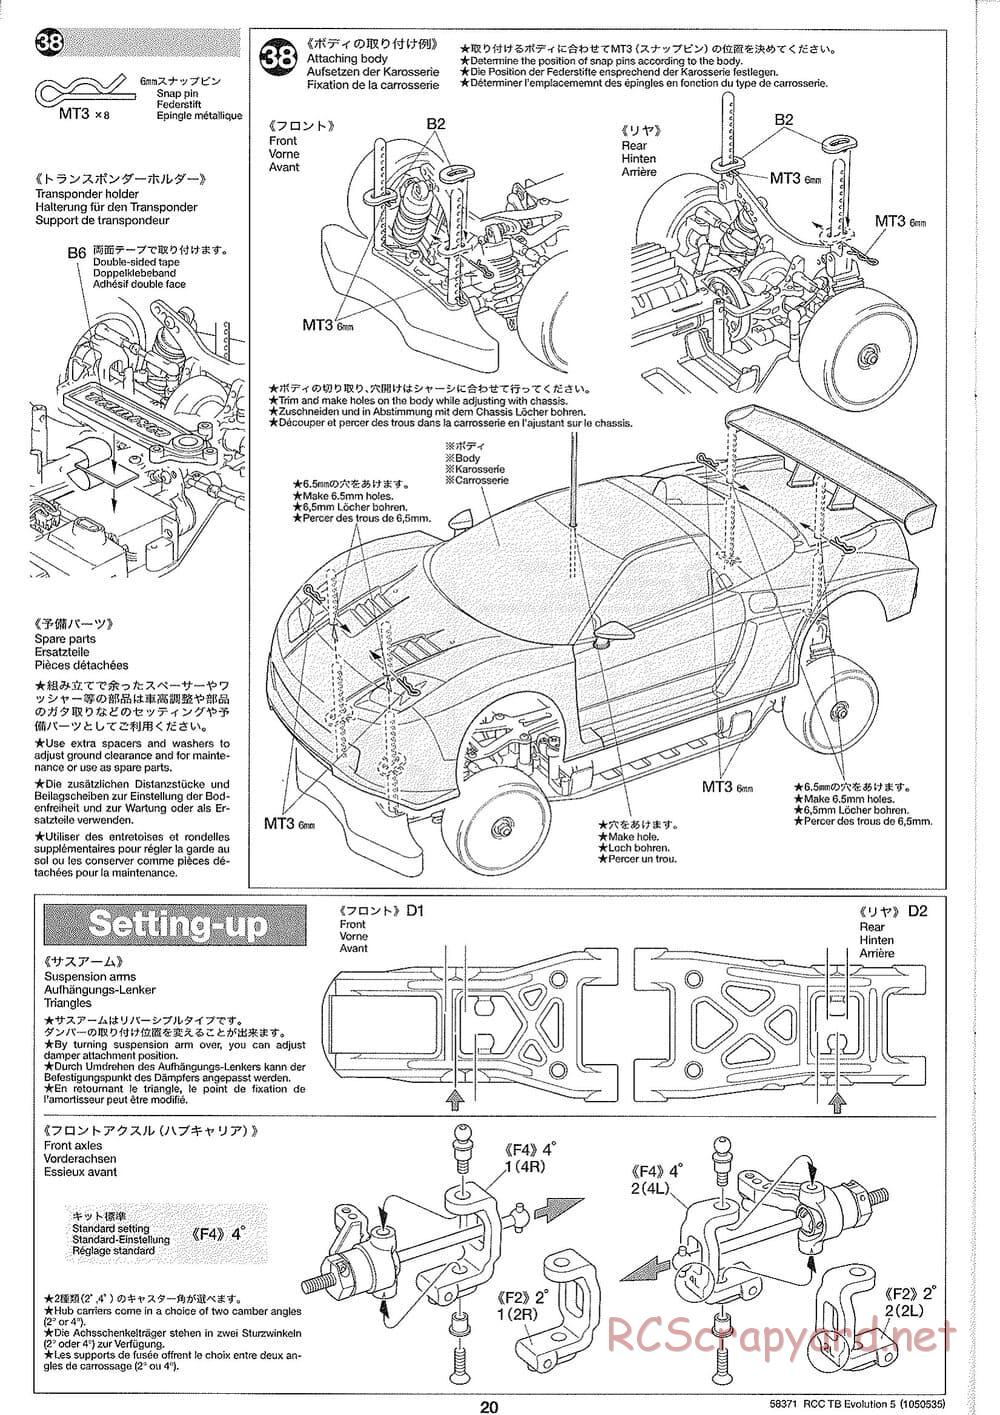 Tamiya - TB Evolution V Chassis - Manual - Page 20